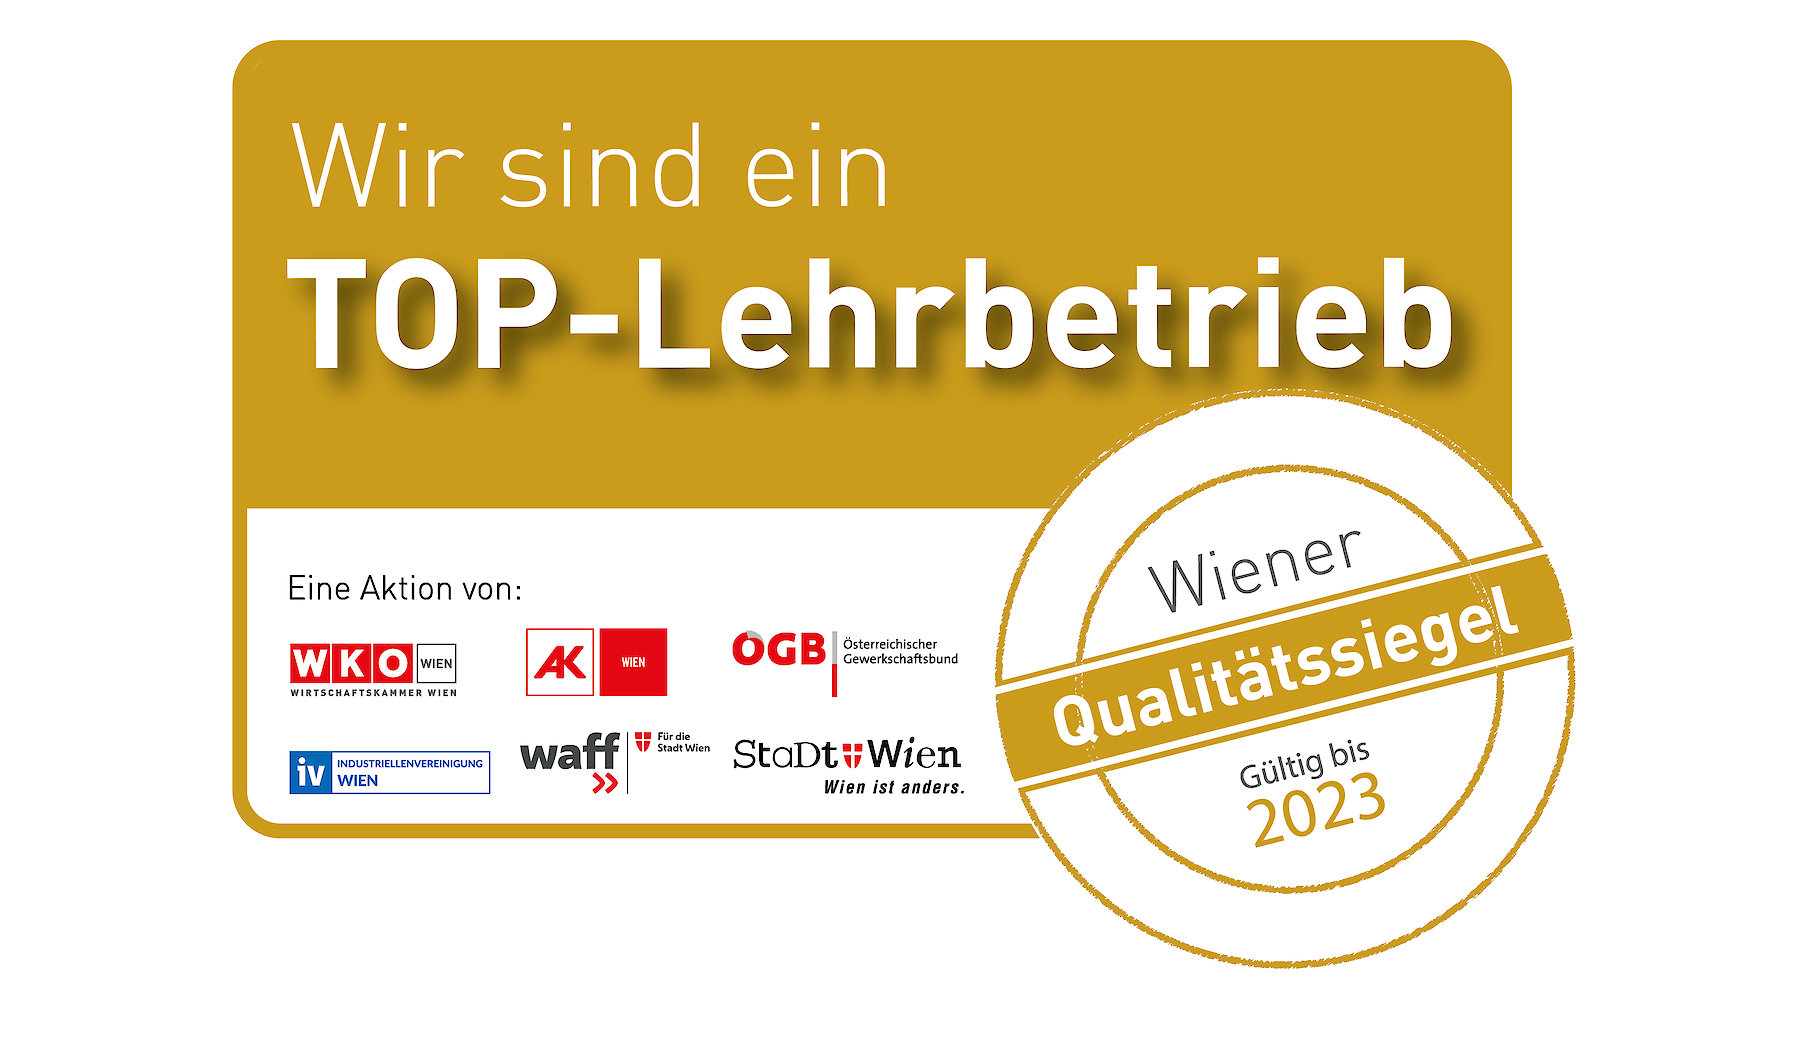 Abbildung Top-Lehrbetrieb Wiener Qualitätssiegel gültig bis 2023